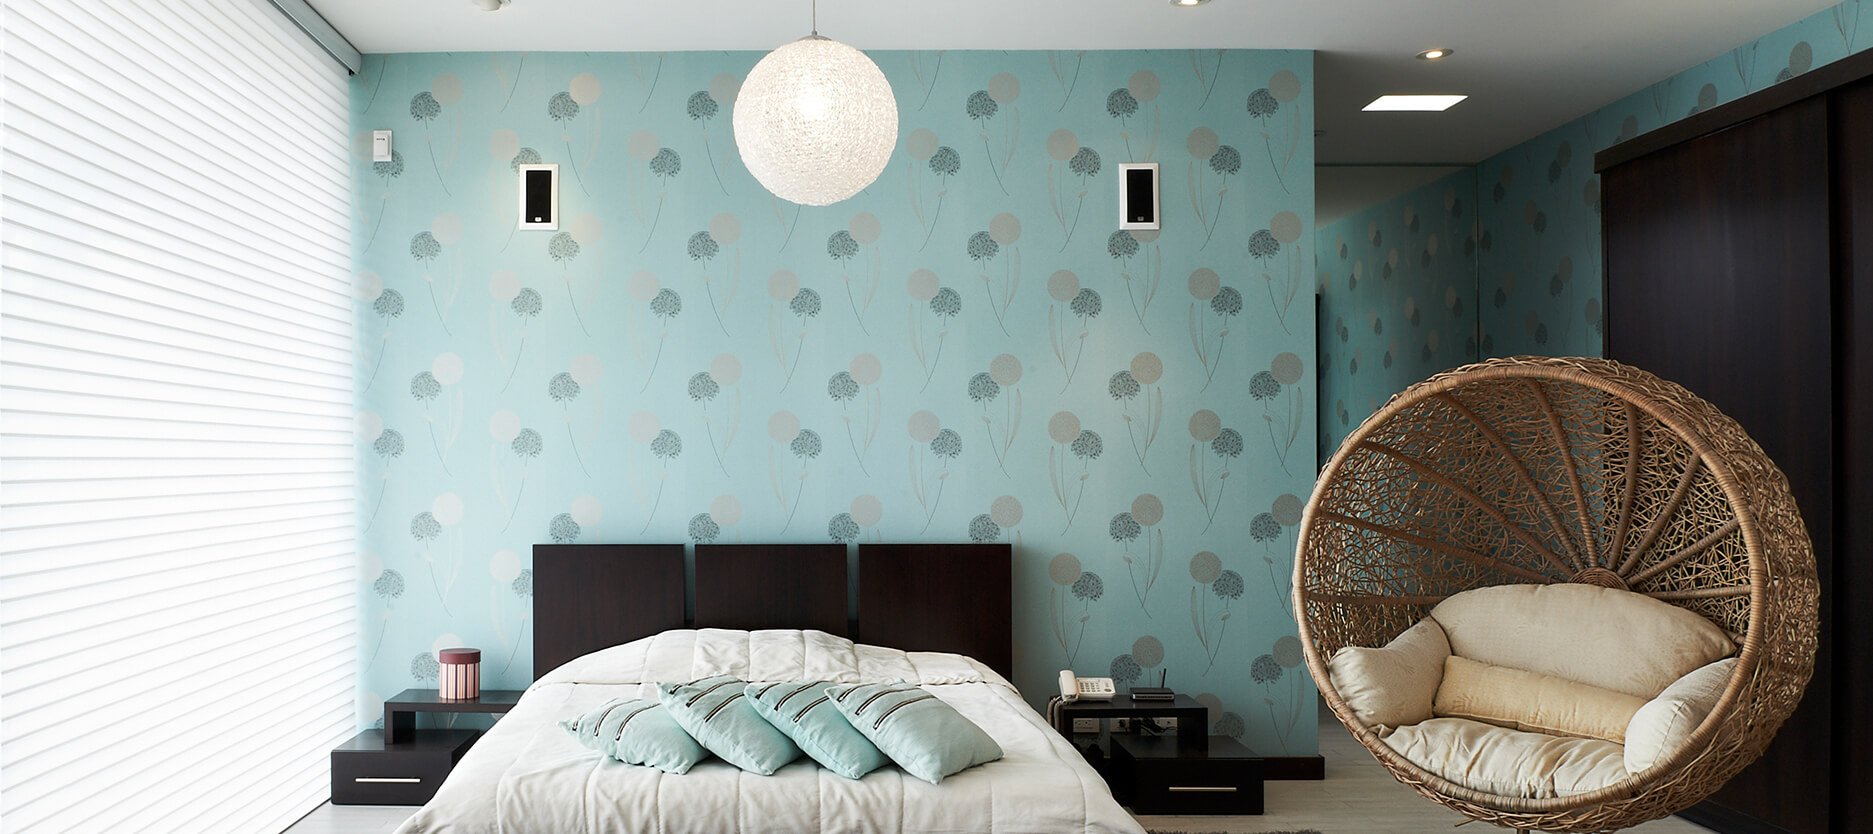 배경 dinding 카마르 티 두르 romantis,침실,방,벽,인테리어 디자인,가구